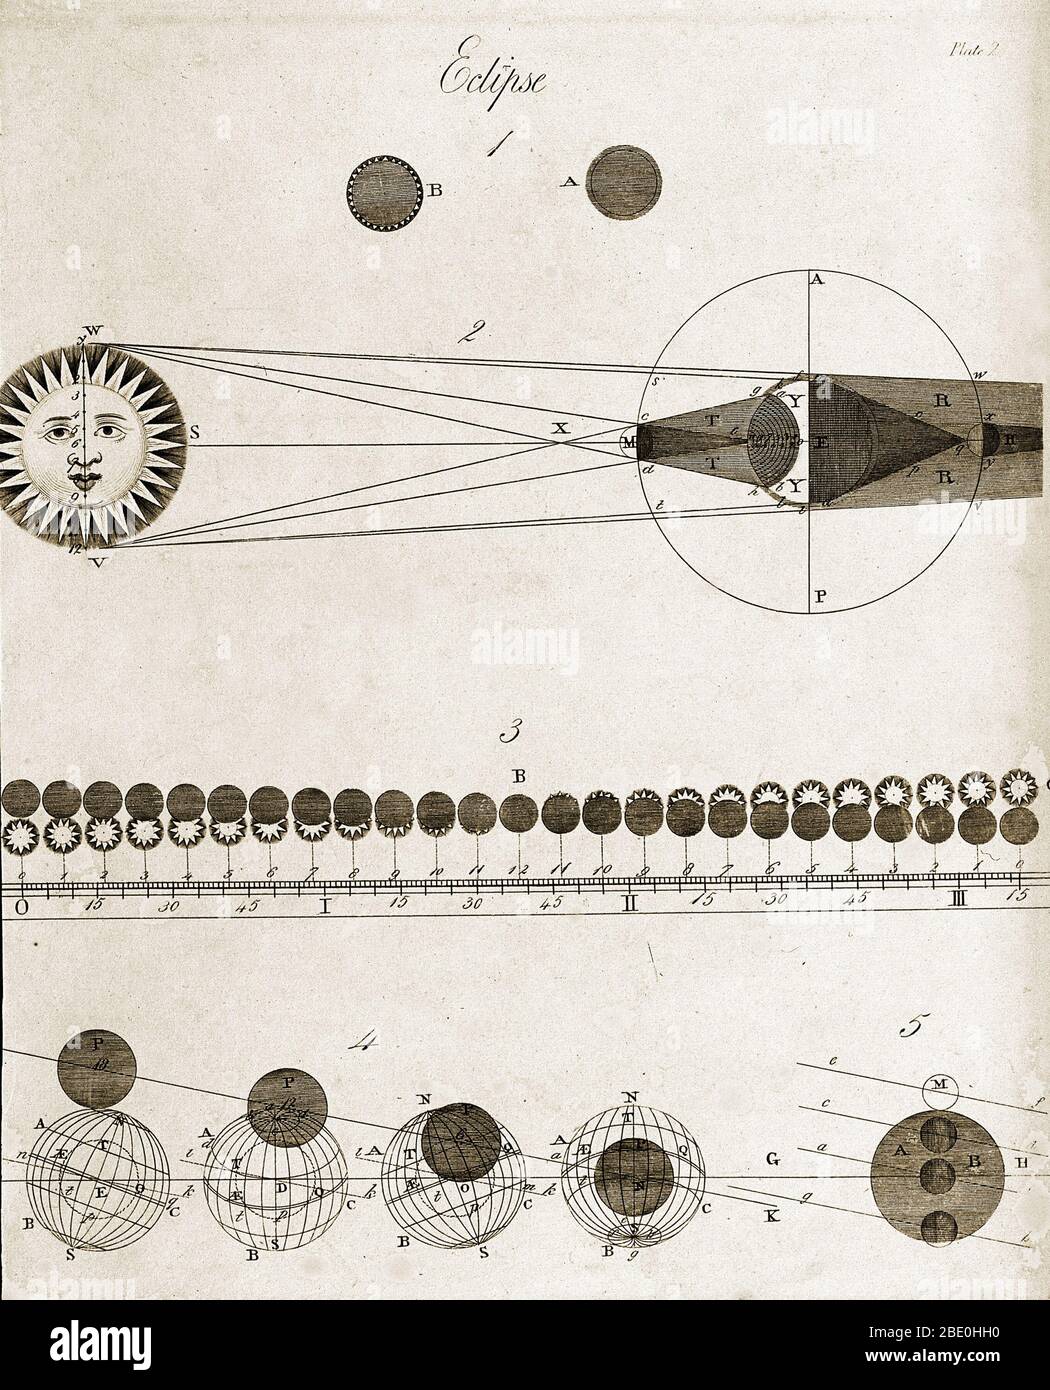 Un diagramma del XVIII secolo di un'eclissi solare, che mostra i principi che li sottendono. La figura i mostra la differenza di aspetto tra le eclissi totali (B) e anulari (A). La Figura II mostra come la Luna (piccolo cerchio, centro a destra) impedisce alla luce (linee) del Sole (estrema sinistra) di raggiungere la Terra (destra), quando la Luna è situata tra la Terra e il Sole. La Figura III mostra come la posizione della Luna (cerchi neri), Come osservato da latitudini diverse, influisce l'aspetto del Sole durante un'eclissi solare. La Figura IV mostra il percorso della luna (piccolo cerchio) davanti alla Terra (grande Foto Stock